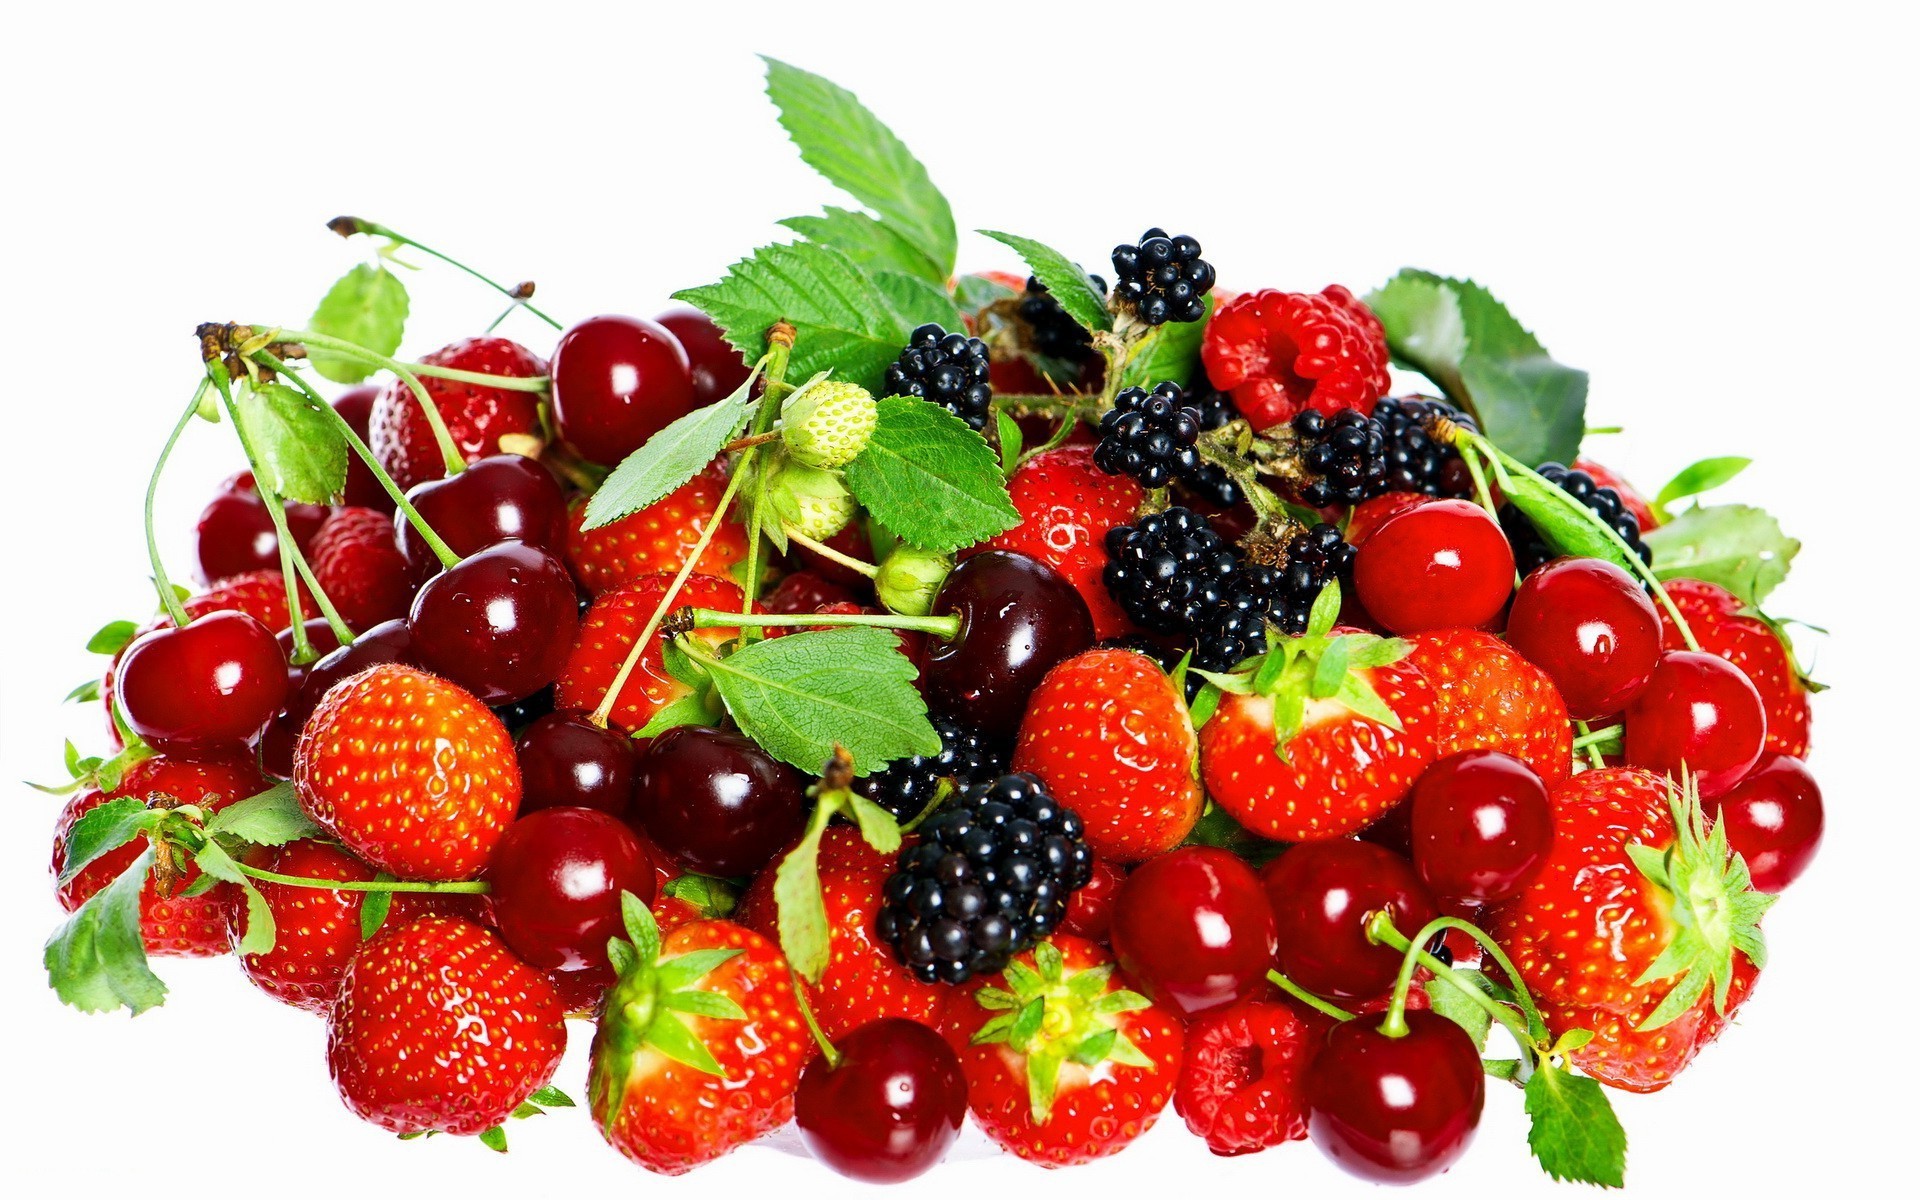 ягоды фрукты ягодка здоровый сочные еда вкусные лист питание кондитерское изделие сладкий здоровья диета вкусные клубничный витамин освежение эпикур свежесть вишня